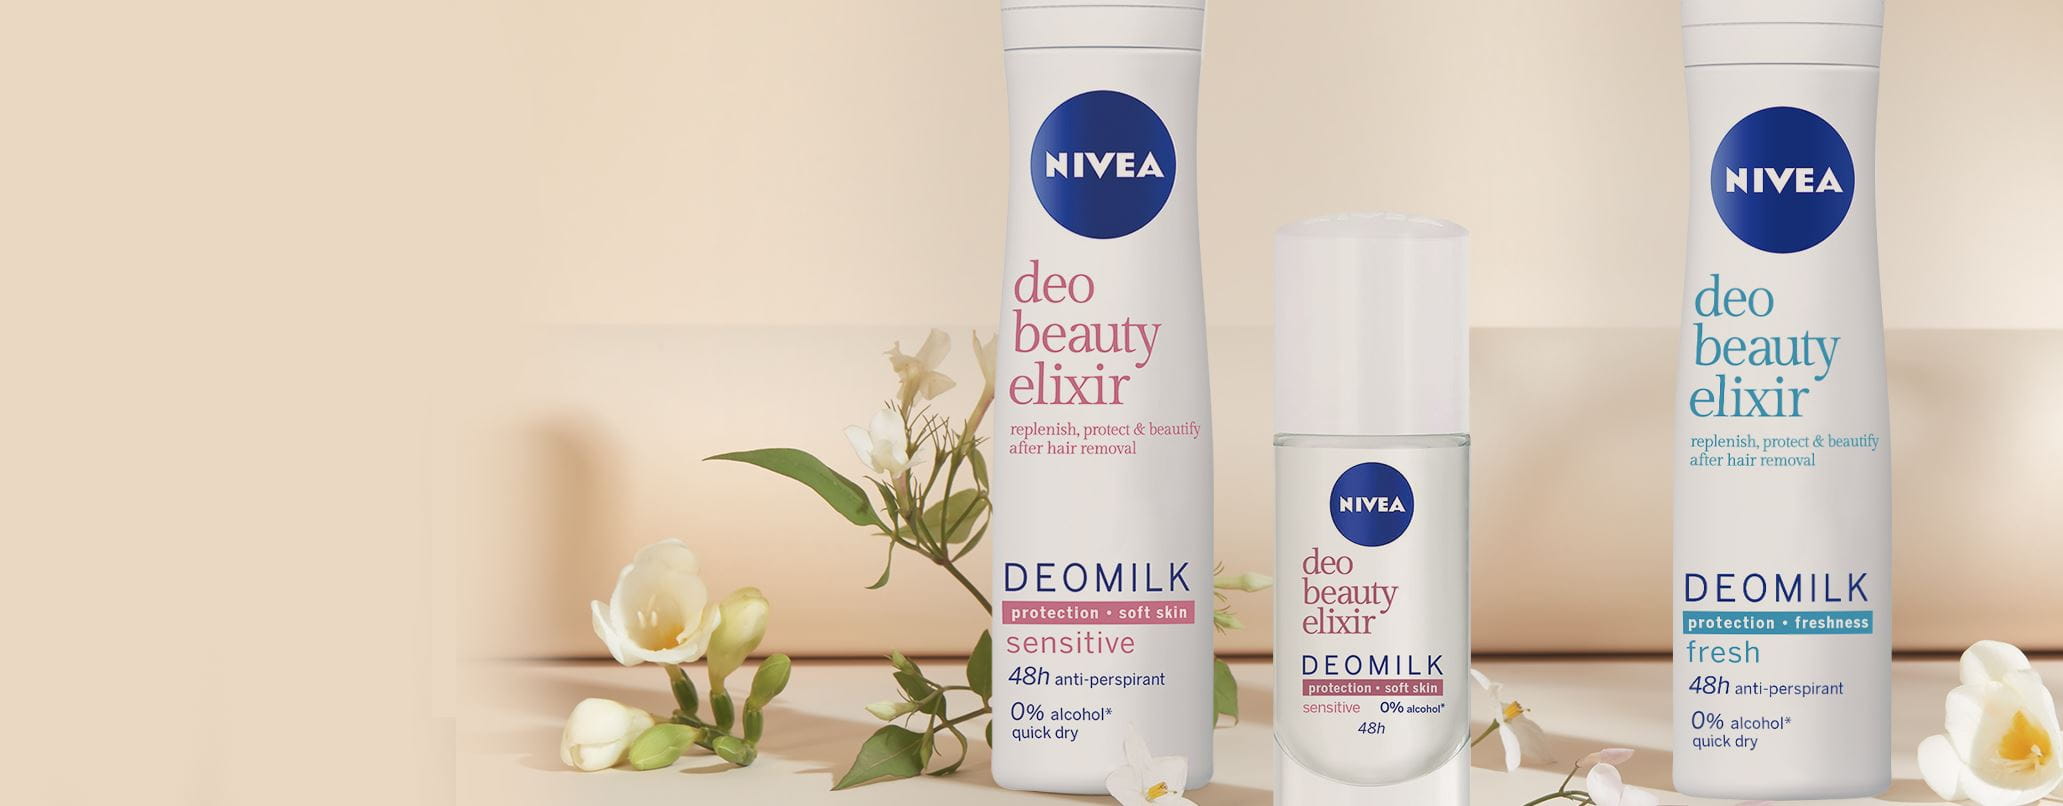 NIVEA Deo Beauty Elixir